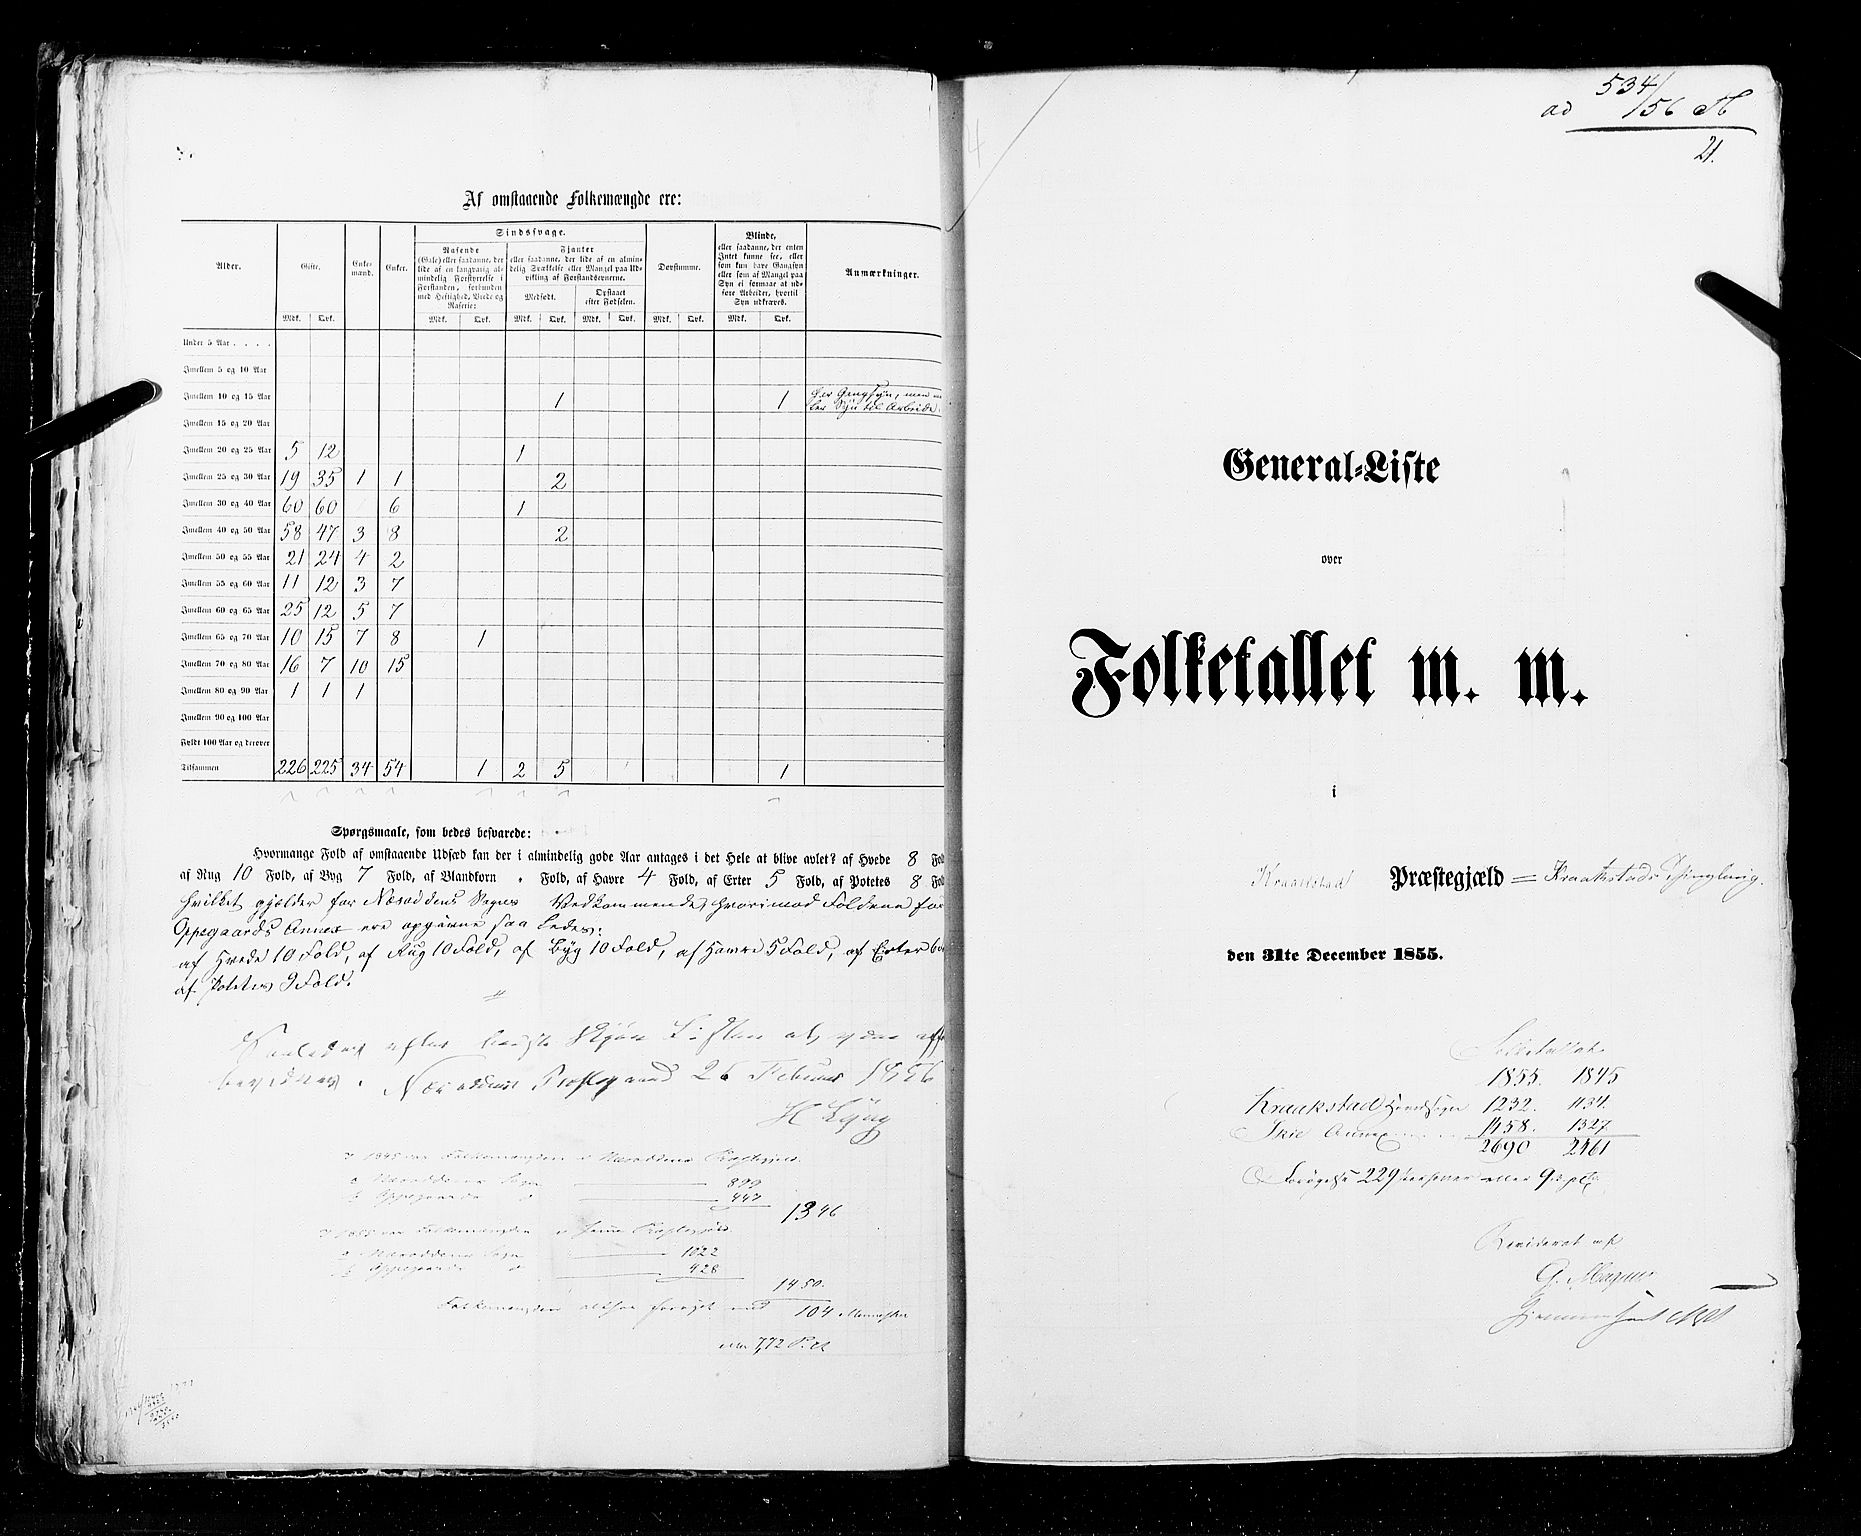 RA, Folketellingen 1855, bind 1: Akershus amt, Smålenenes amt og Hedemarken amt, 1855, s. 21